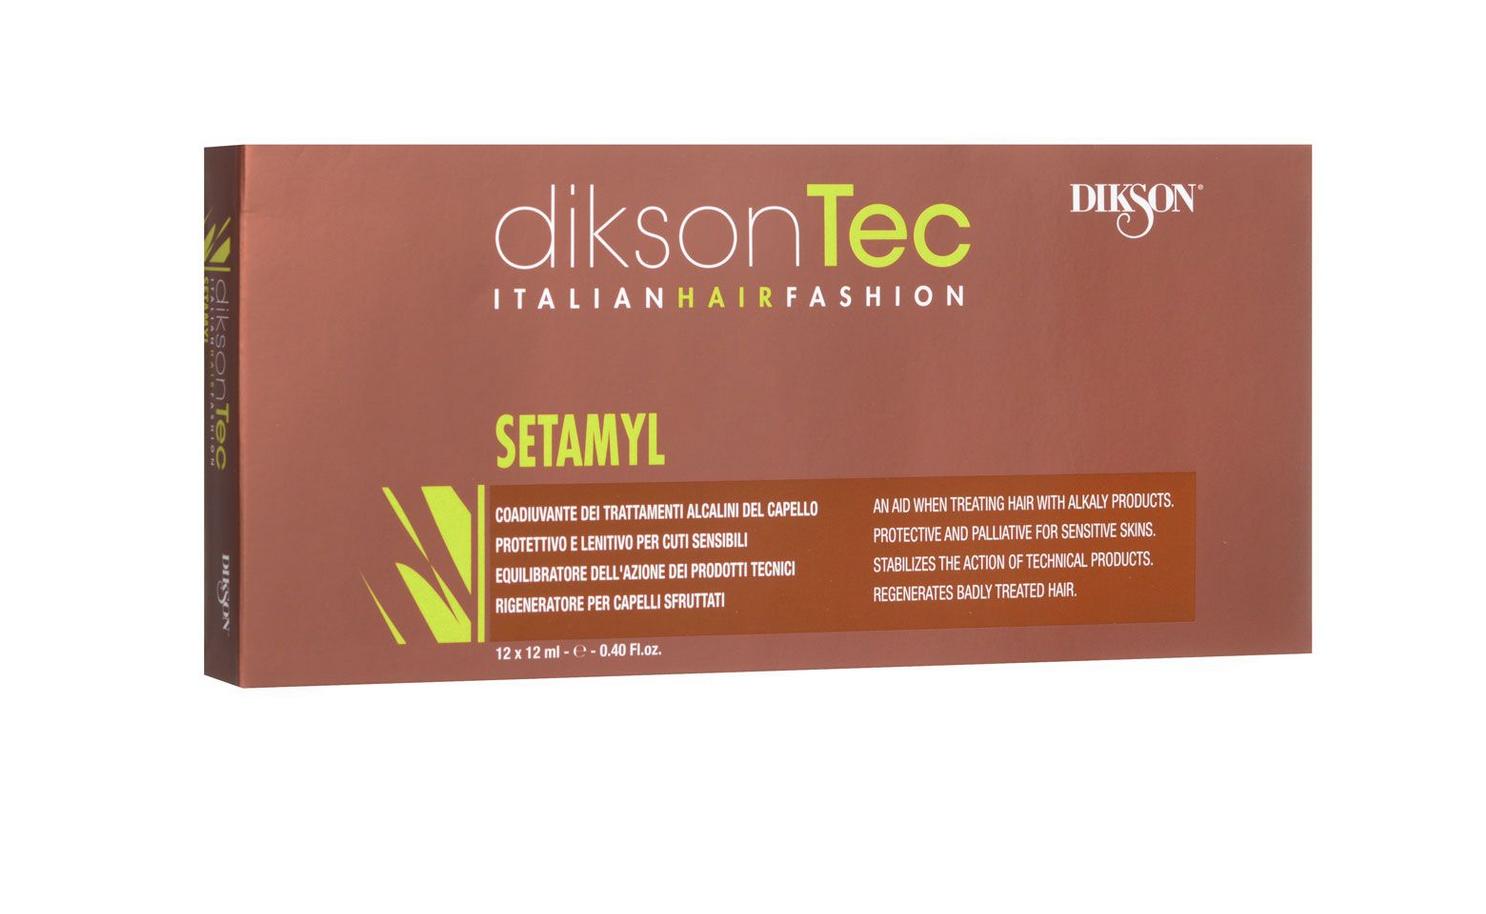 Ампульное защитное средство при любой химической обработке волос - Dikson Setamyl